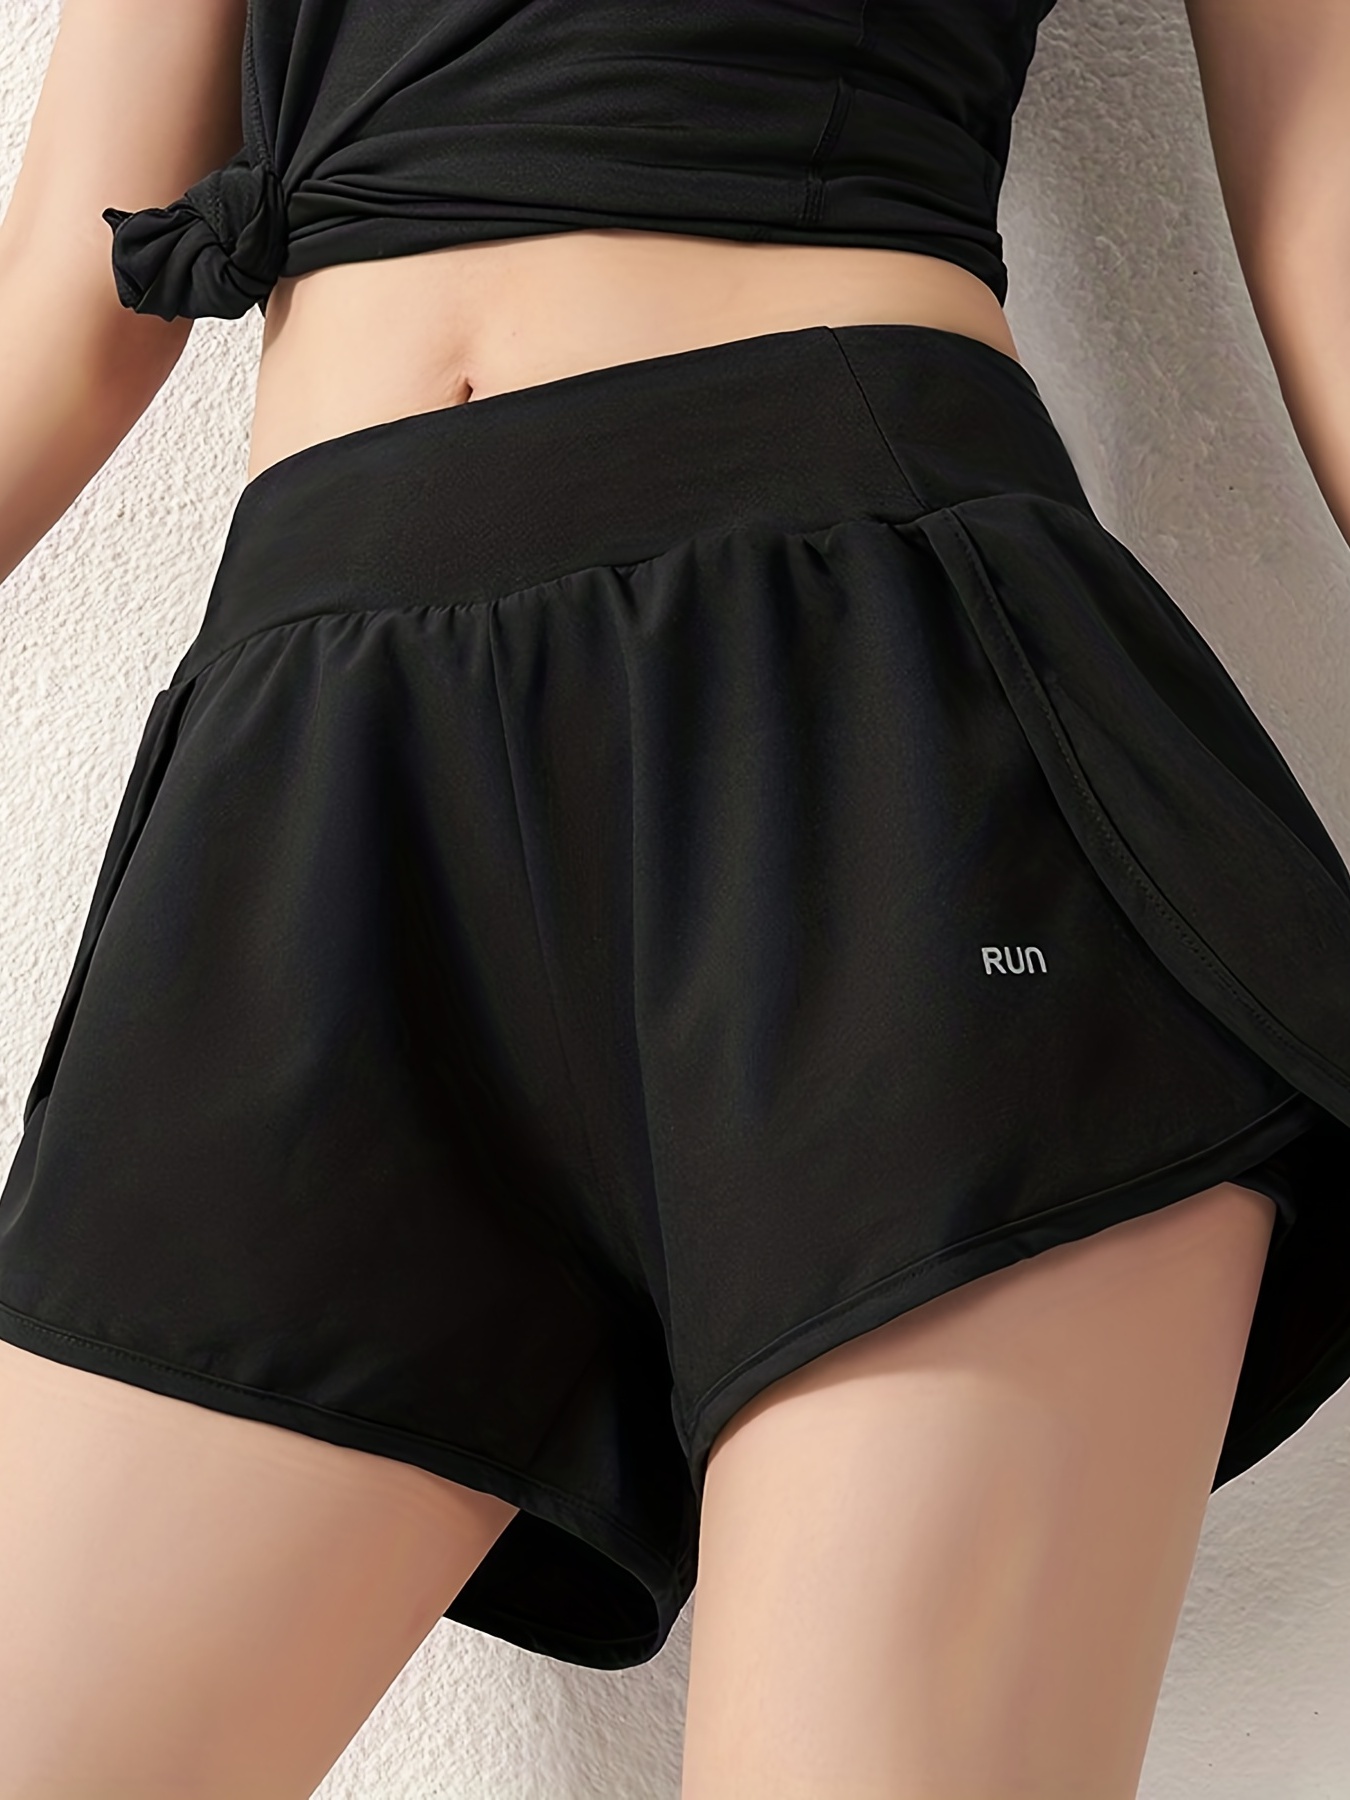 Pantalones cortos deportivos para mujer, Shorts holgados de